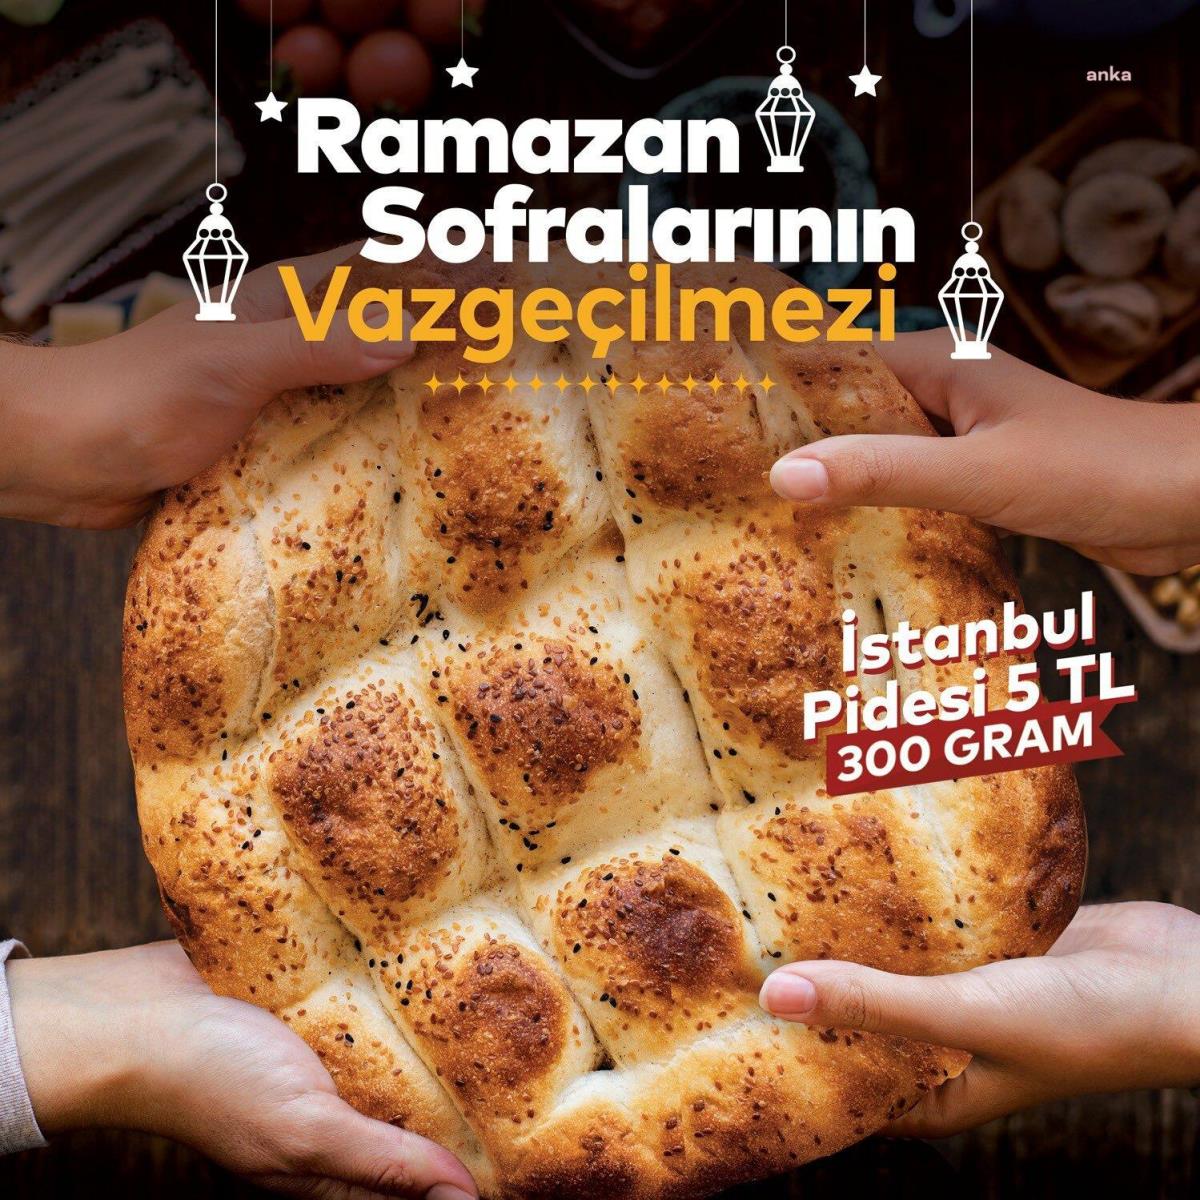 İmamoğlu: Vatandaşlarımız Ramazan'da 300 Gramlık Pideyi 5 TL'den Halk Ekmek Büfelerinden Satın Alabilecekler